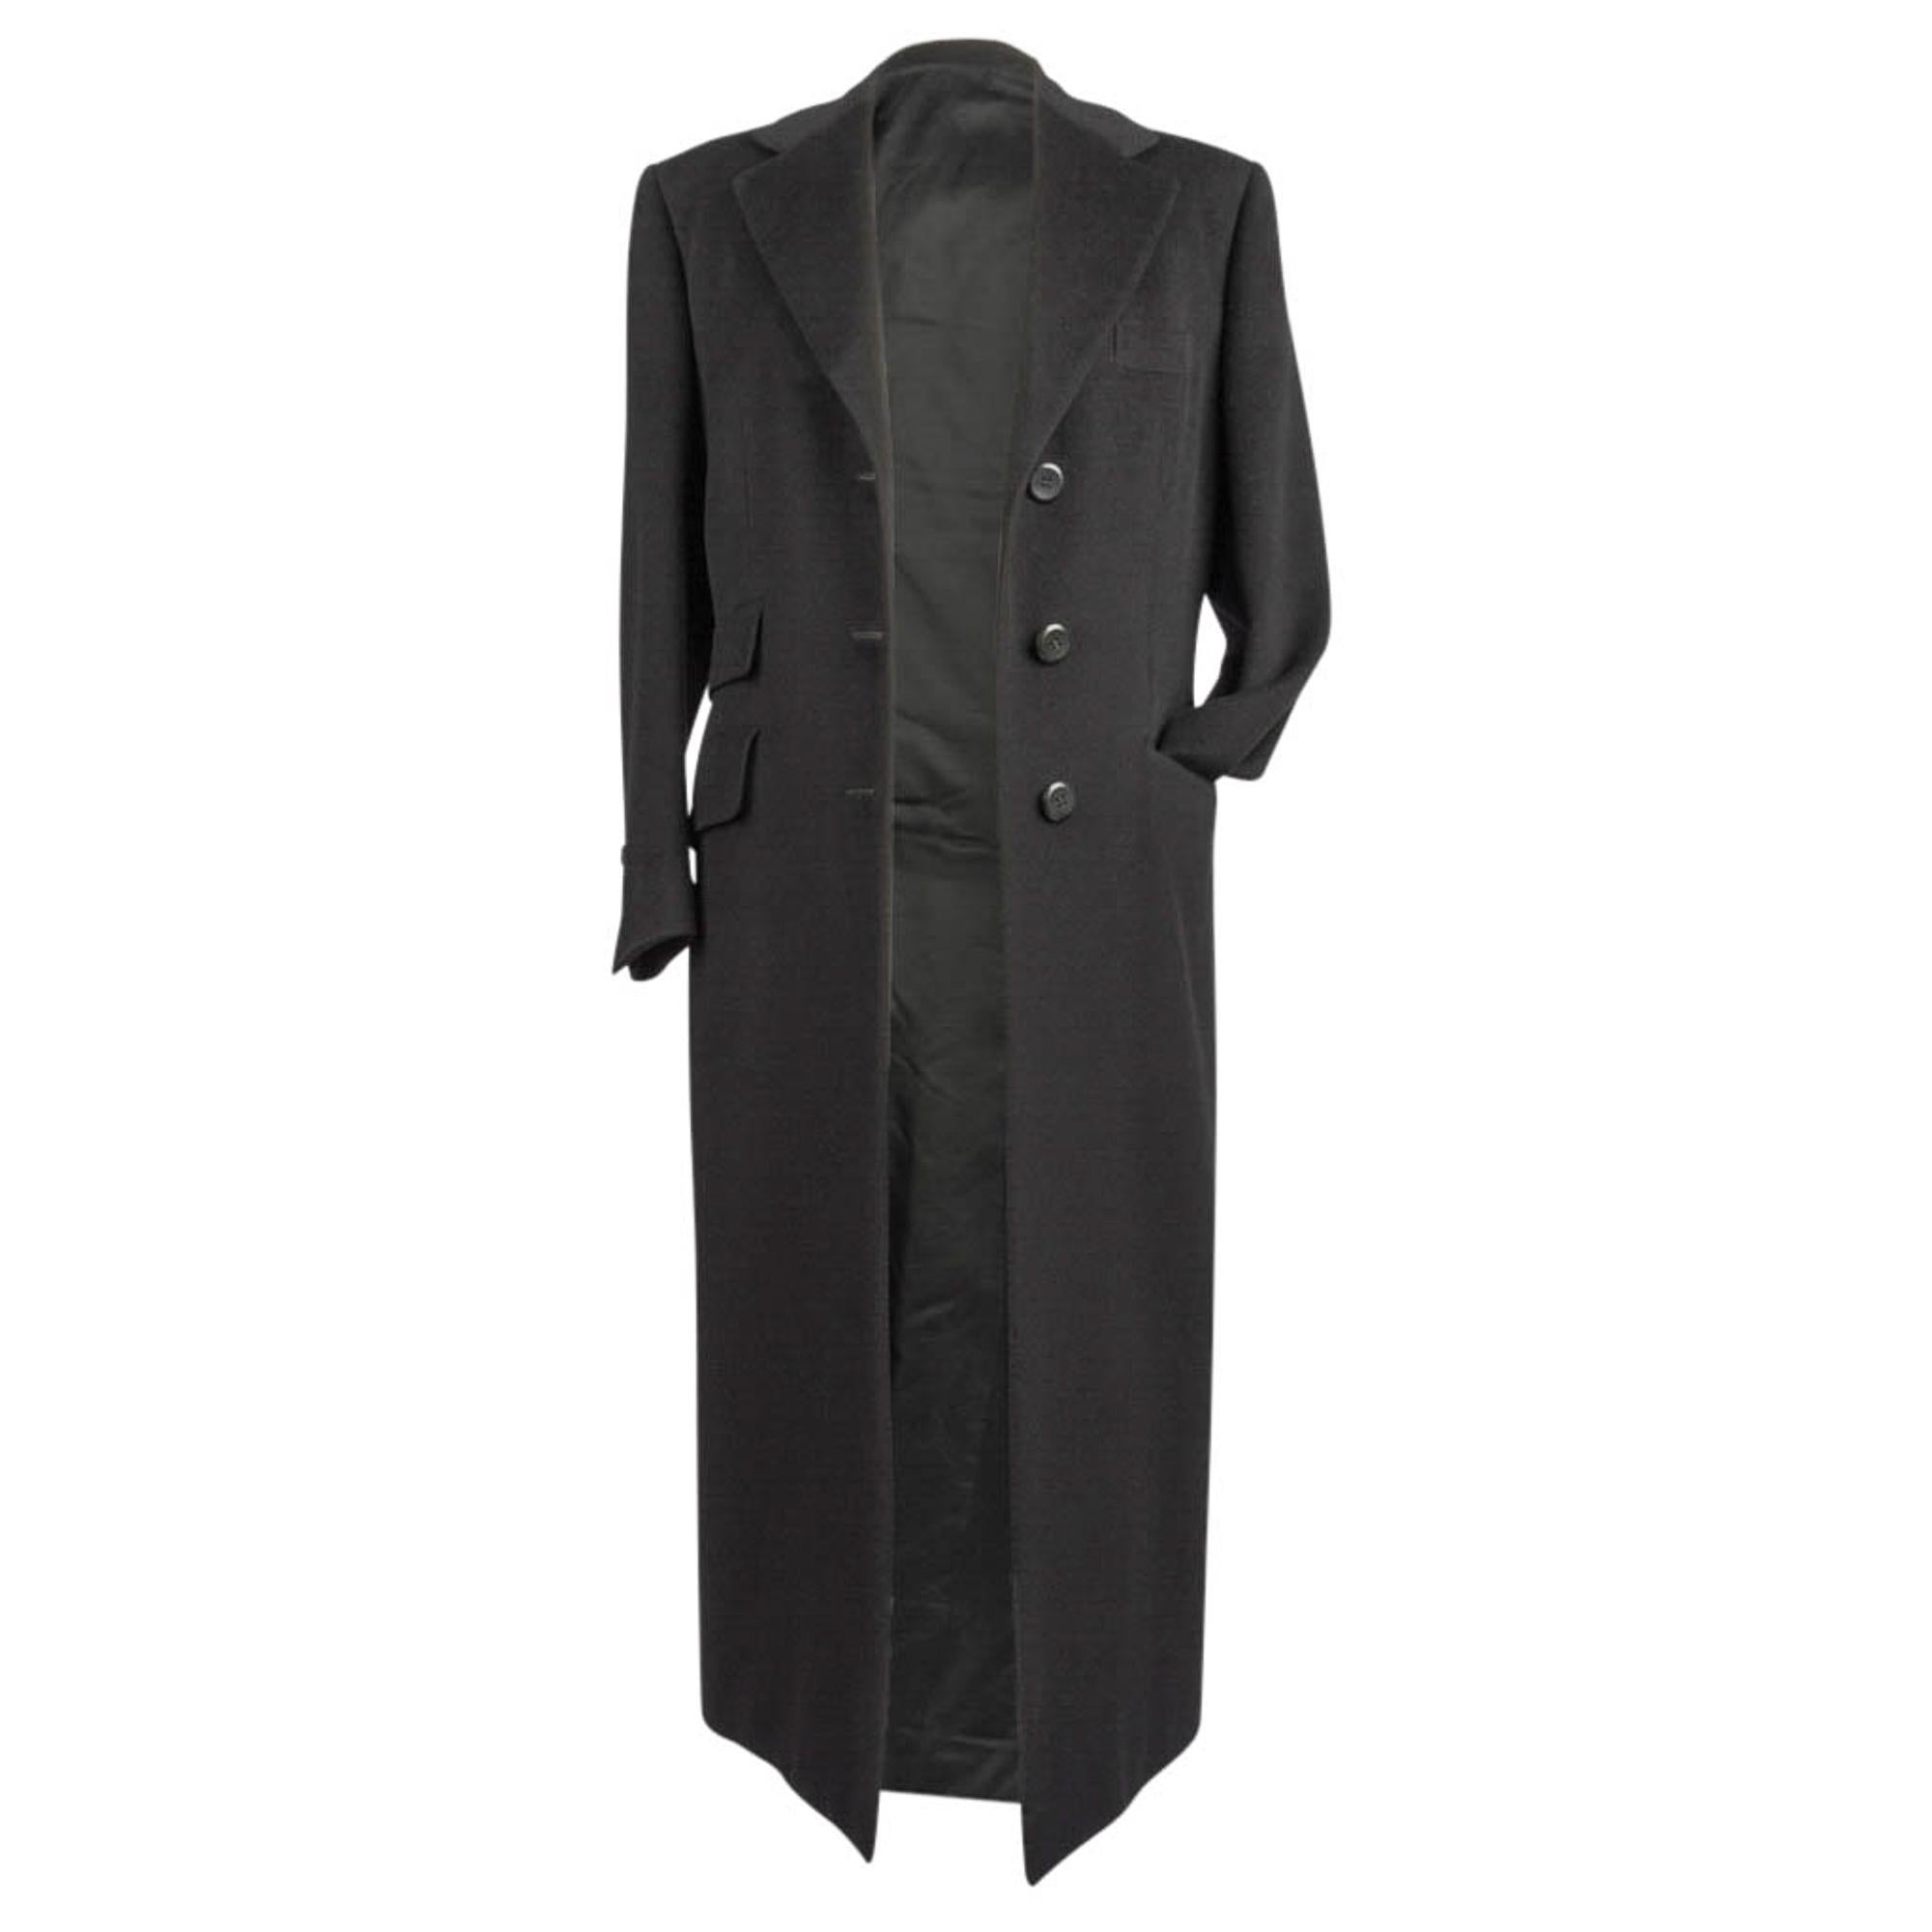 Brioni Donna Cashmere Coat Black Classic Maxi Length 6  In Excellent Condition For Sale In Miami, FL